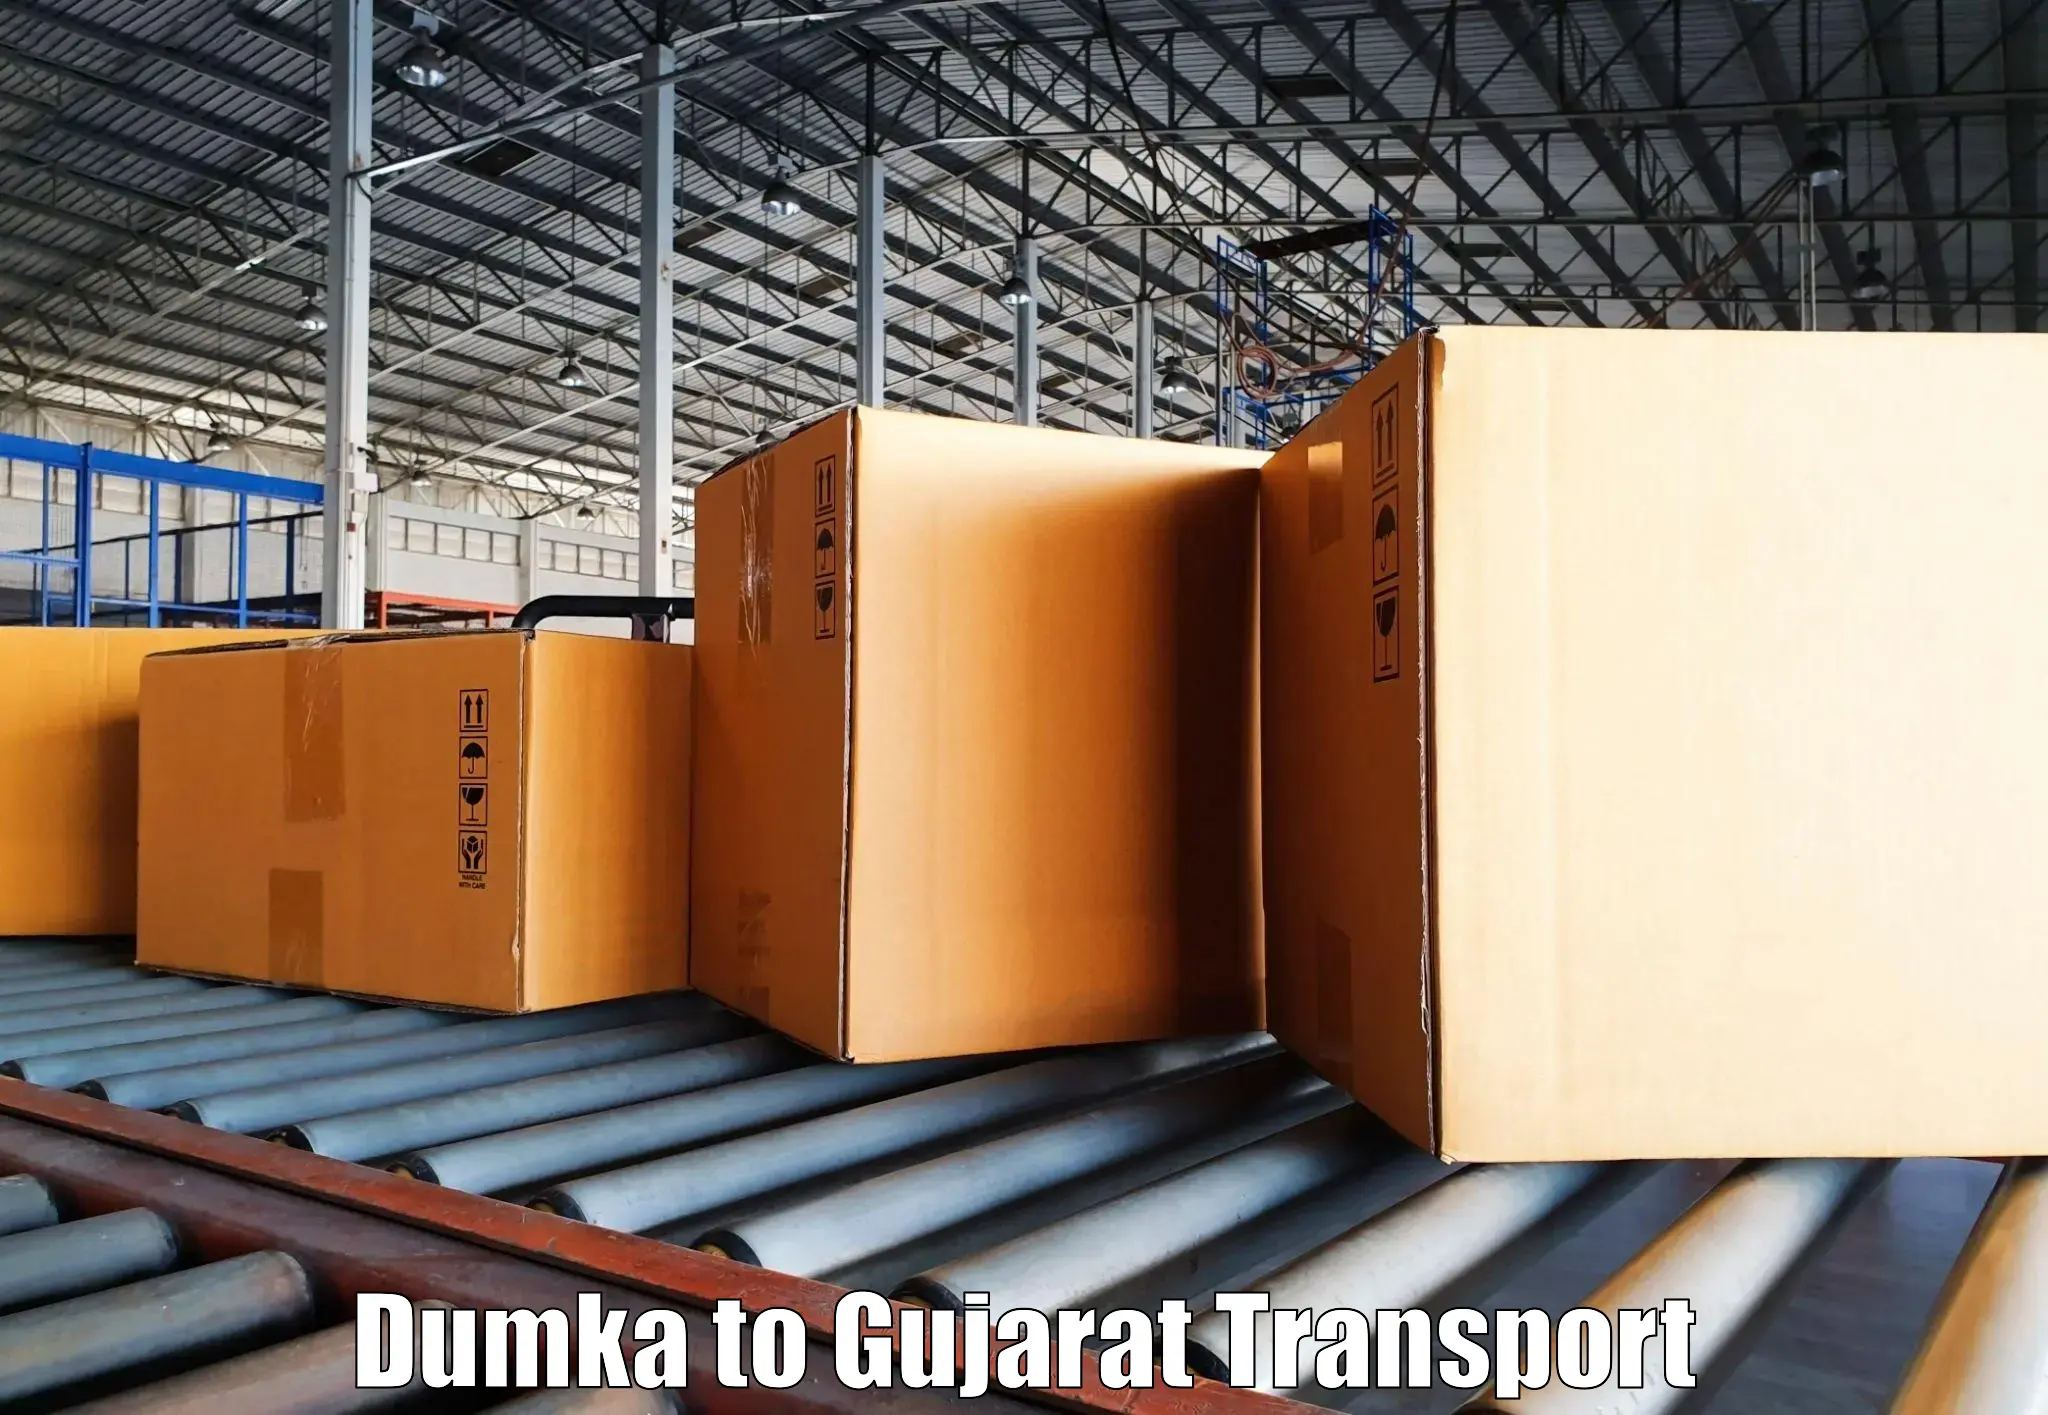 Daily transport service Dumka to Mahuva